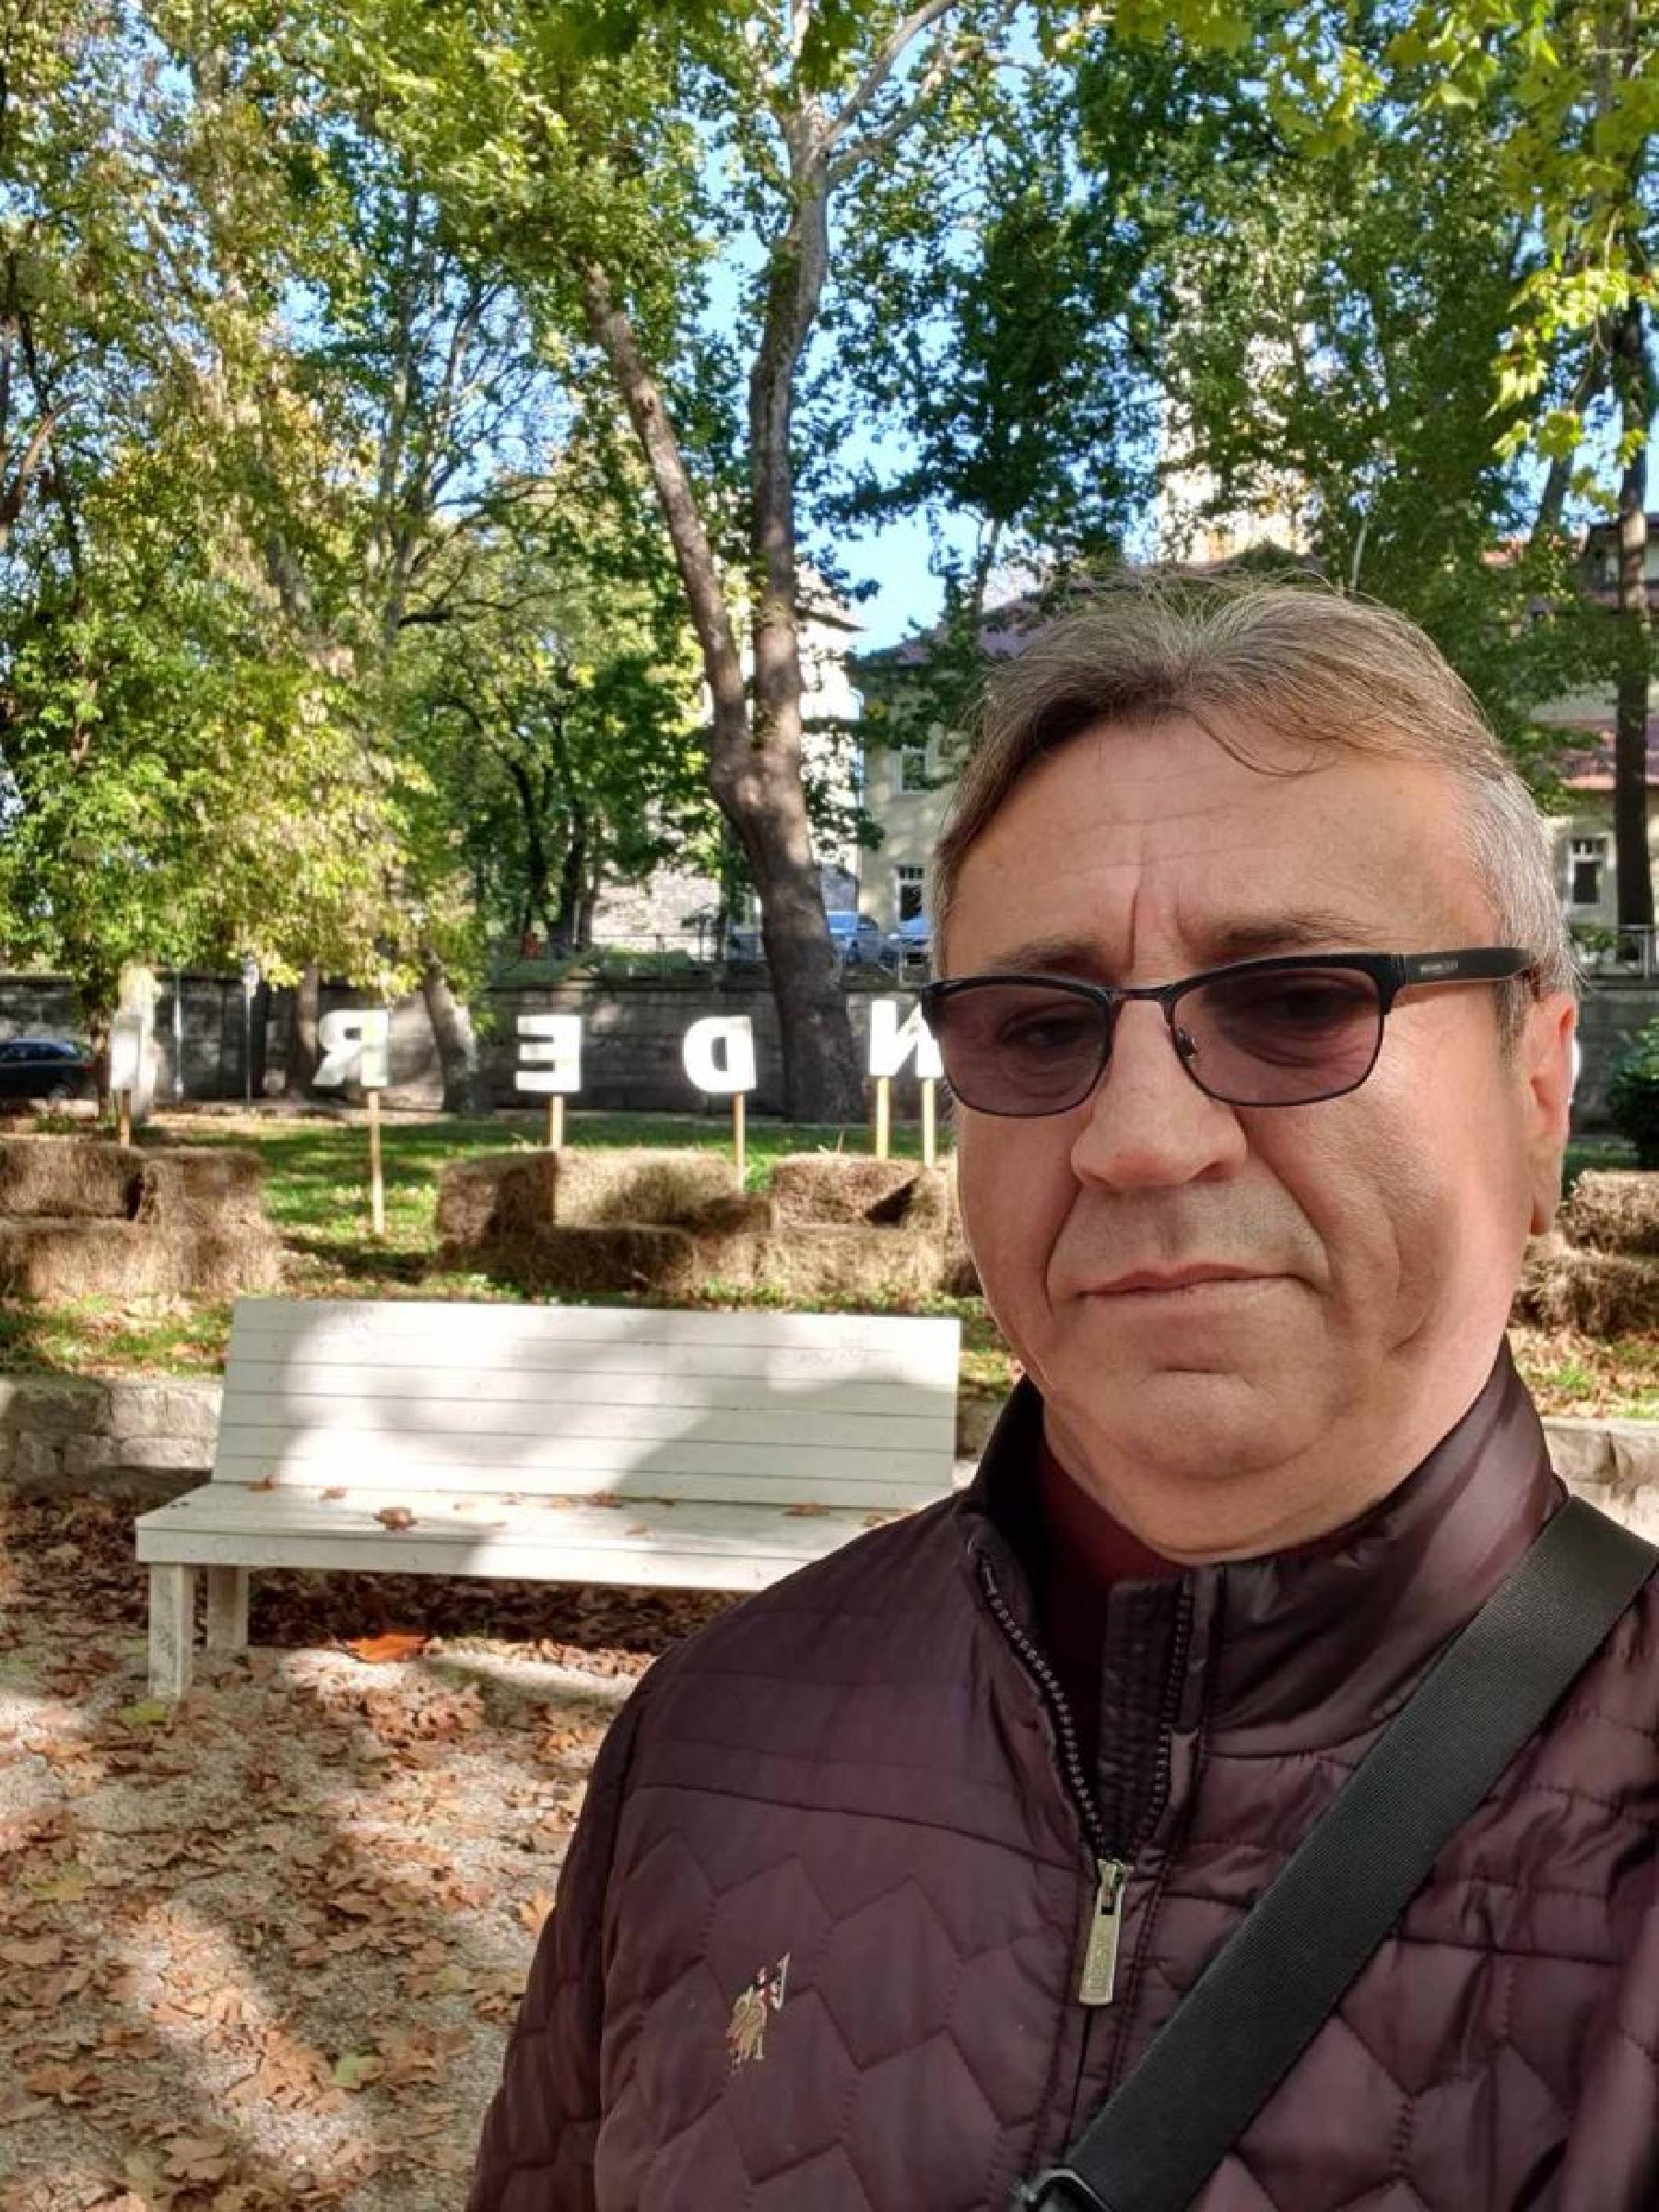 Tko je Hamdija Abdić’Tigar’ kandidat za gradonačelnika Bihaća